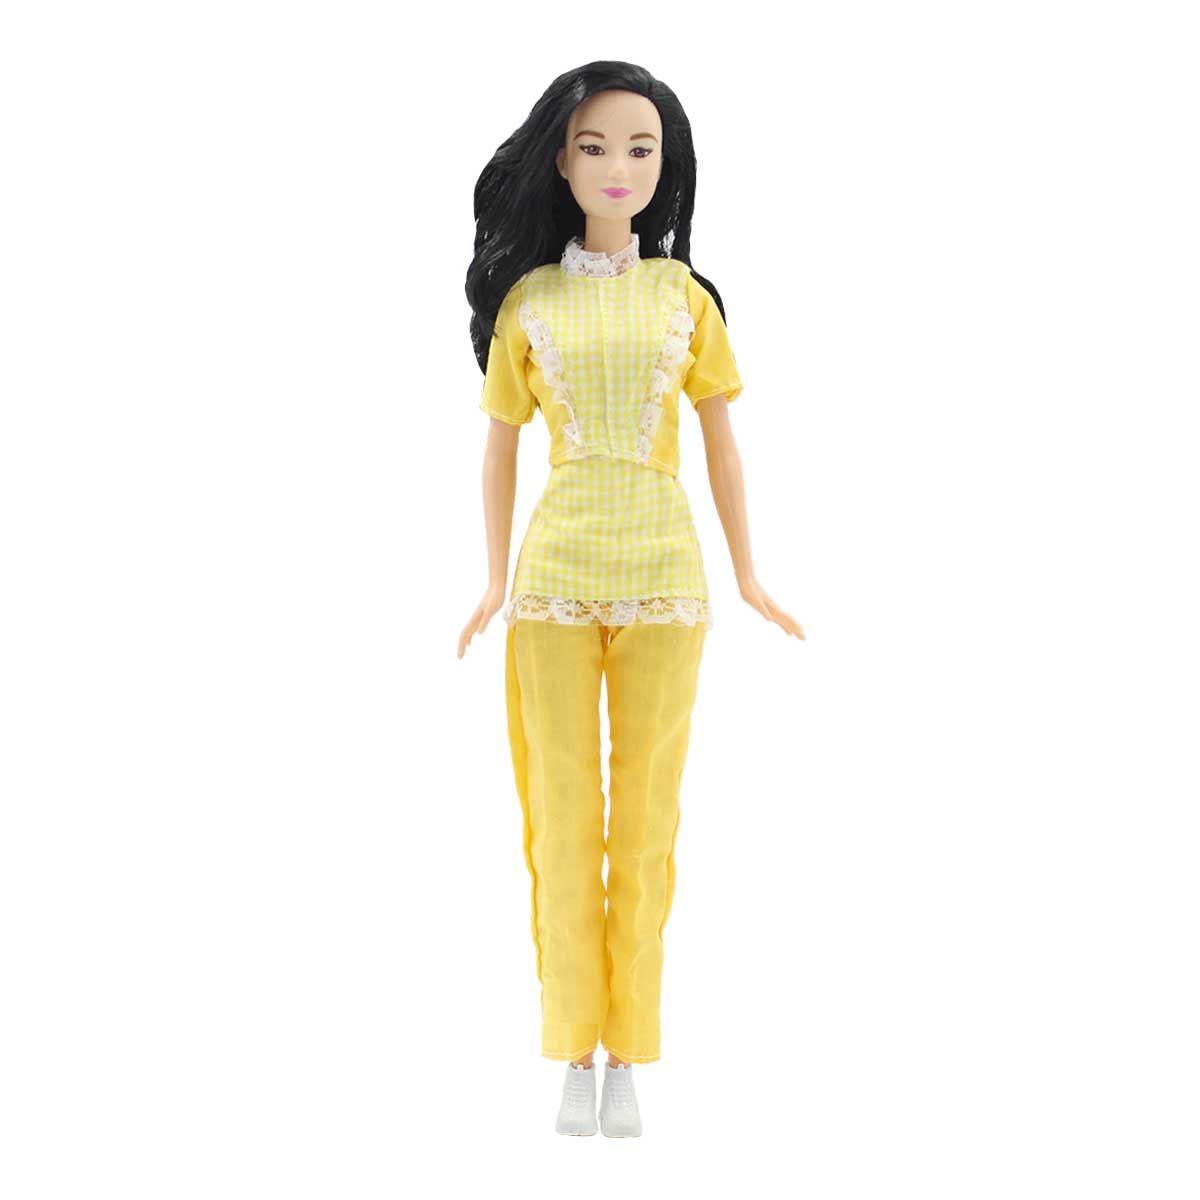 Одежда Dolls Accessories для Барби и других кукол 29 см Горничная желтый староста горничная том 2